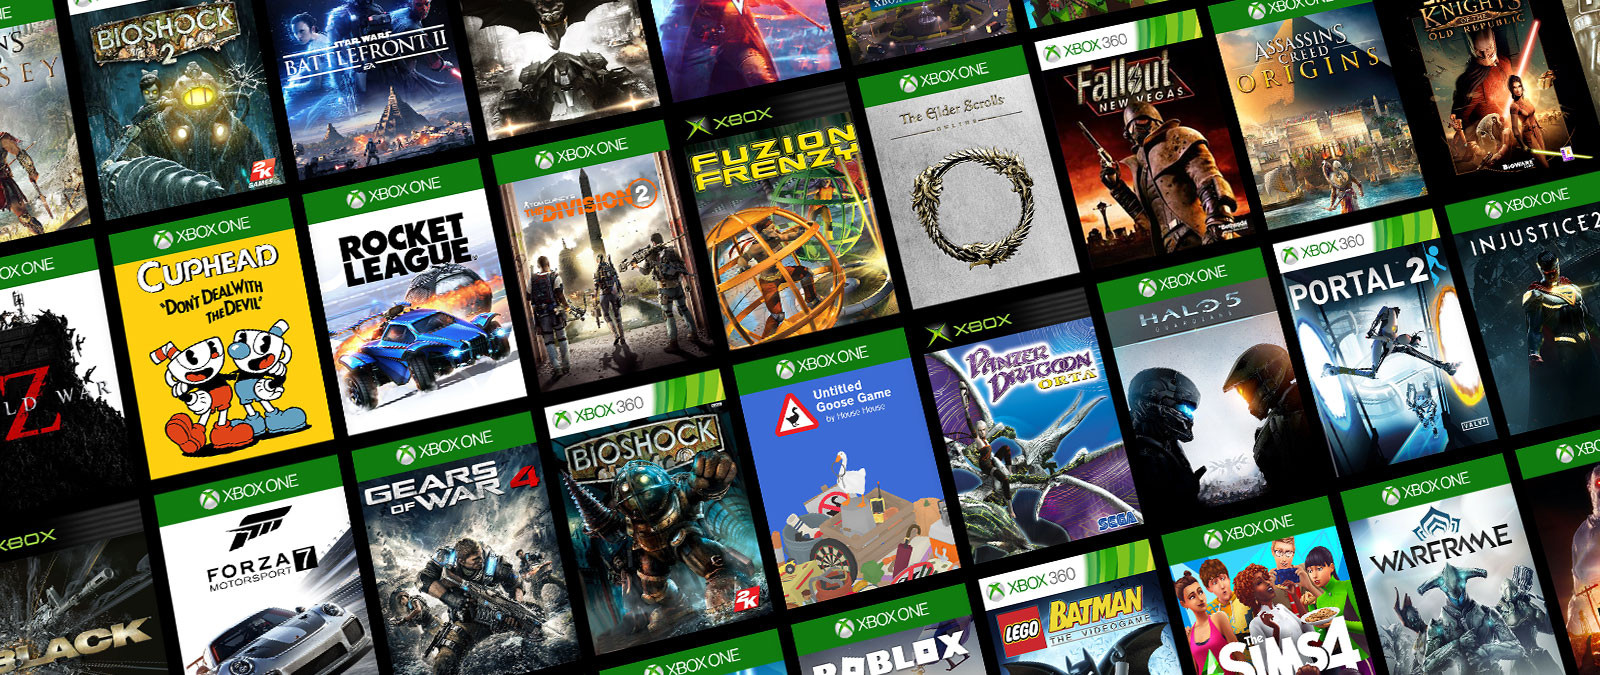 La retrocompatibilité , de plus en plus dure à proposer pour Xbox